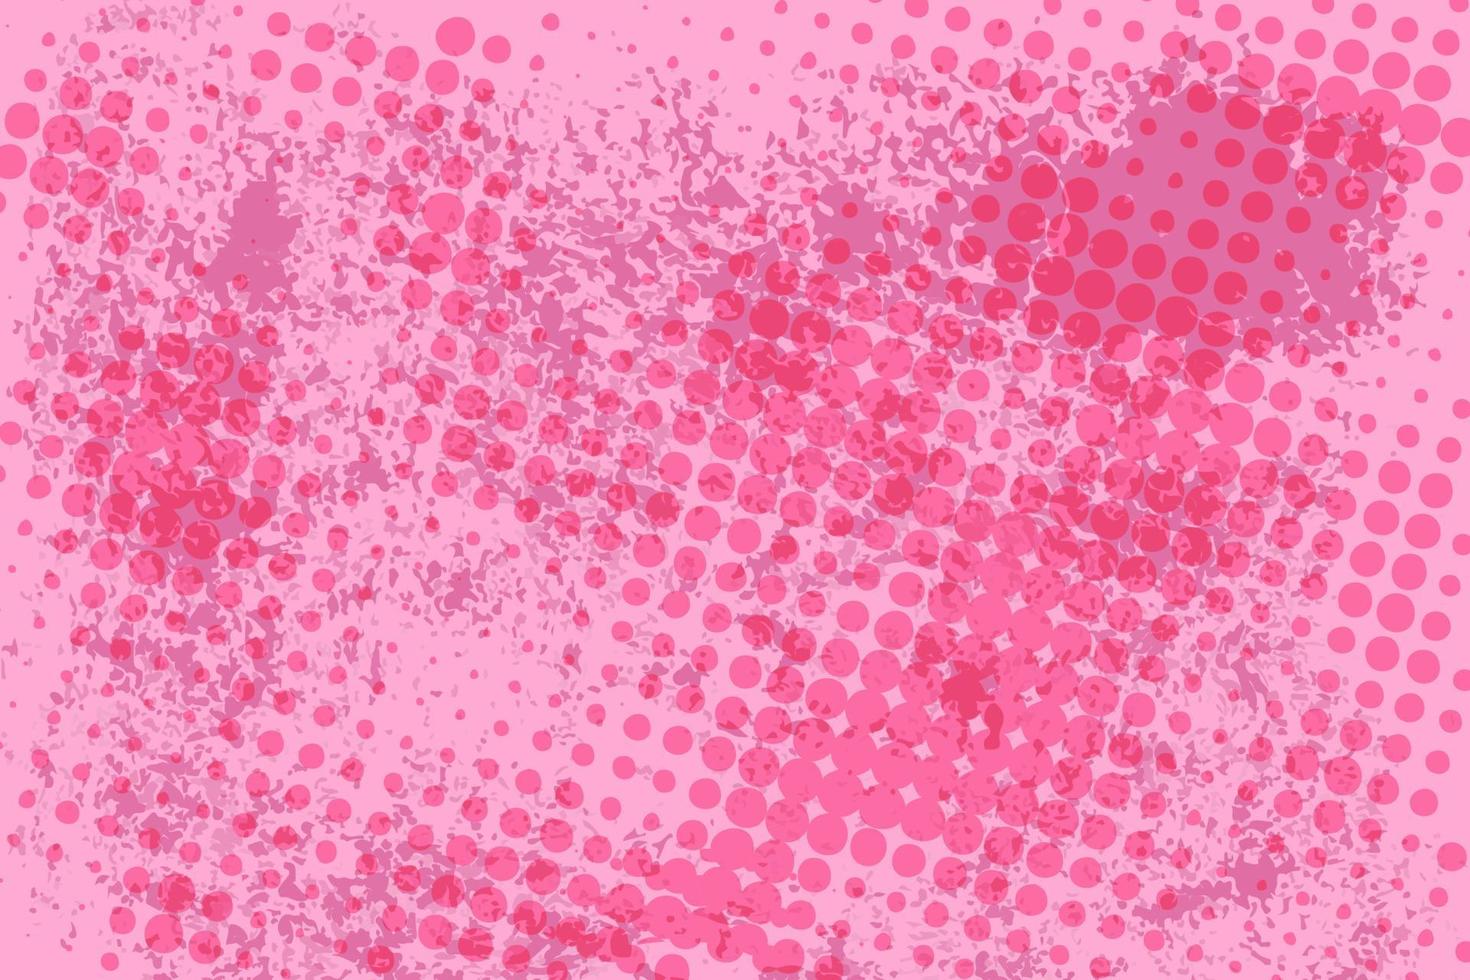 sfondo mezzitoni casuale rosa cerchio modello pennello, punto, cerchi. trama di arte moderna vettoriale per poster, biglietti da visita, copertina, mock-up di etichette, layout di adesivi